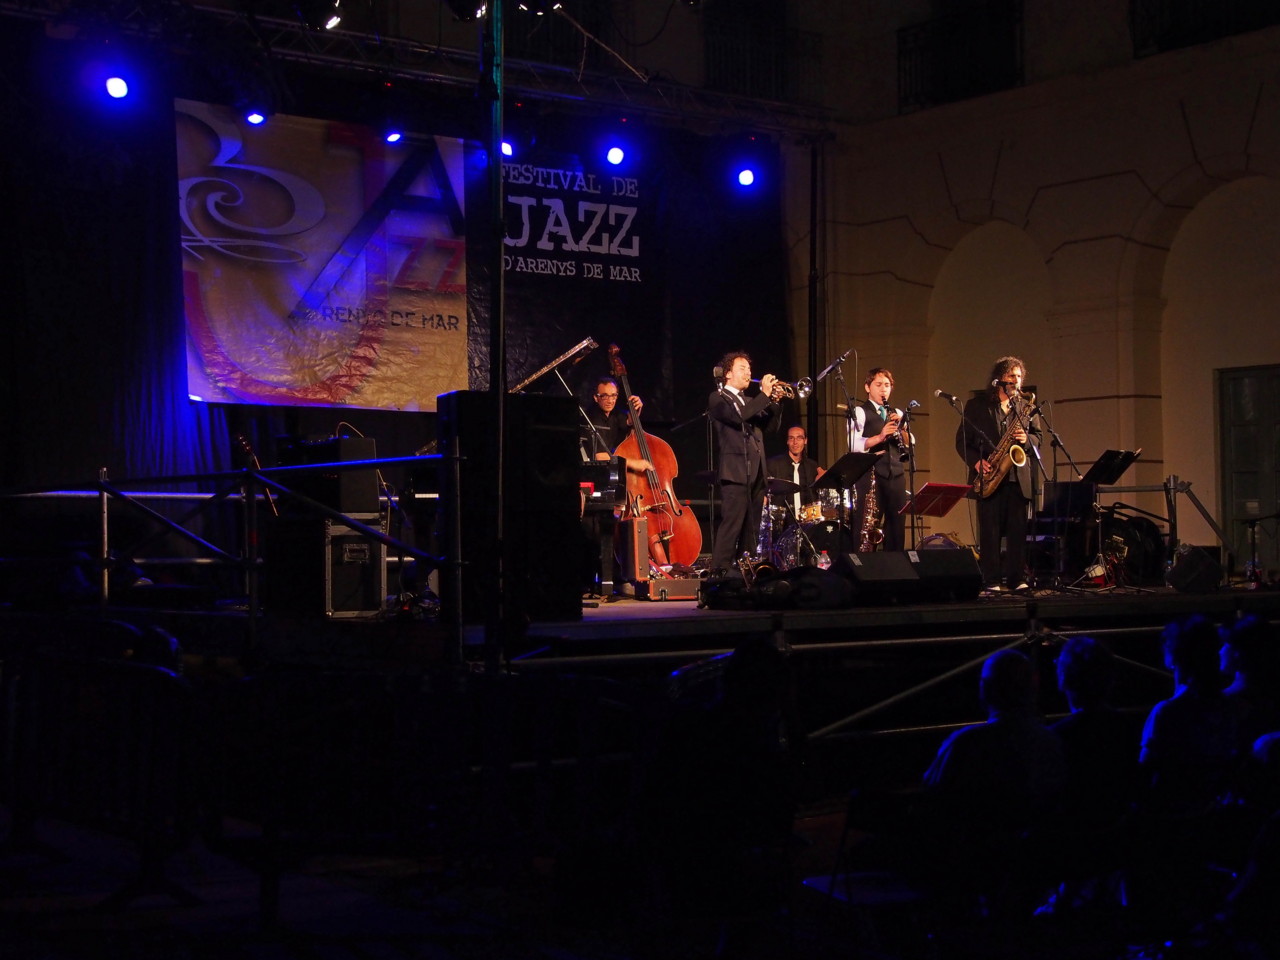 Imatges del 22 Festival de Jazz d'Arenys de Mar - 2013 - Foto 84412735